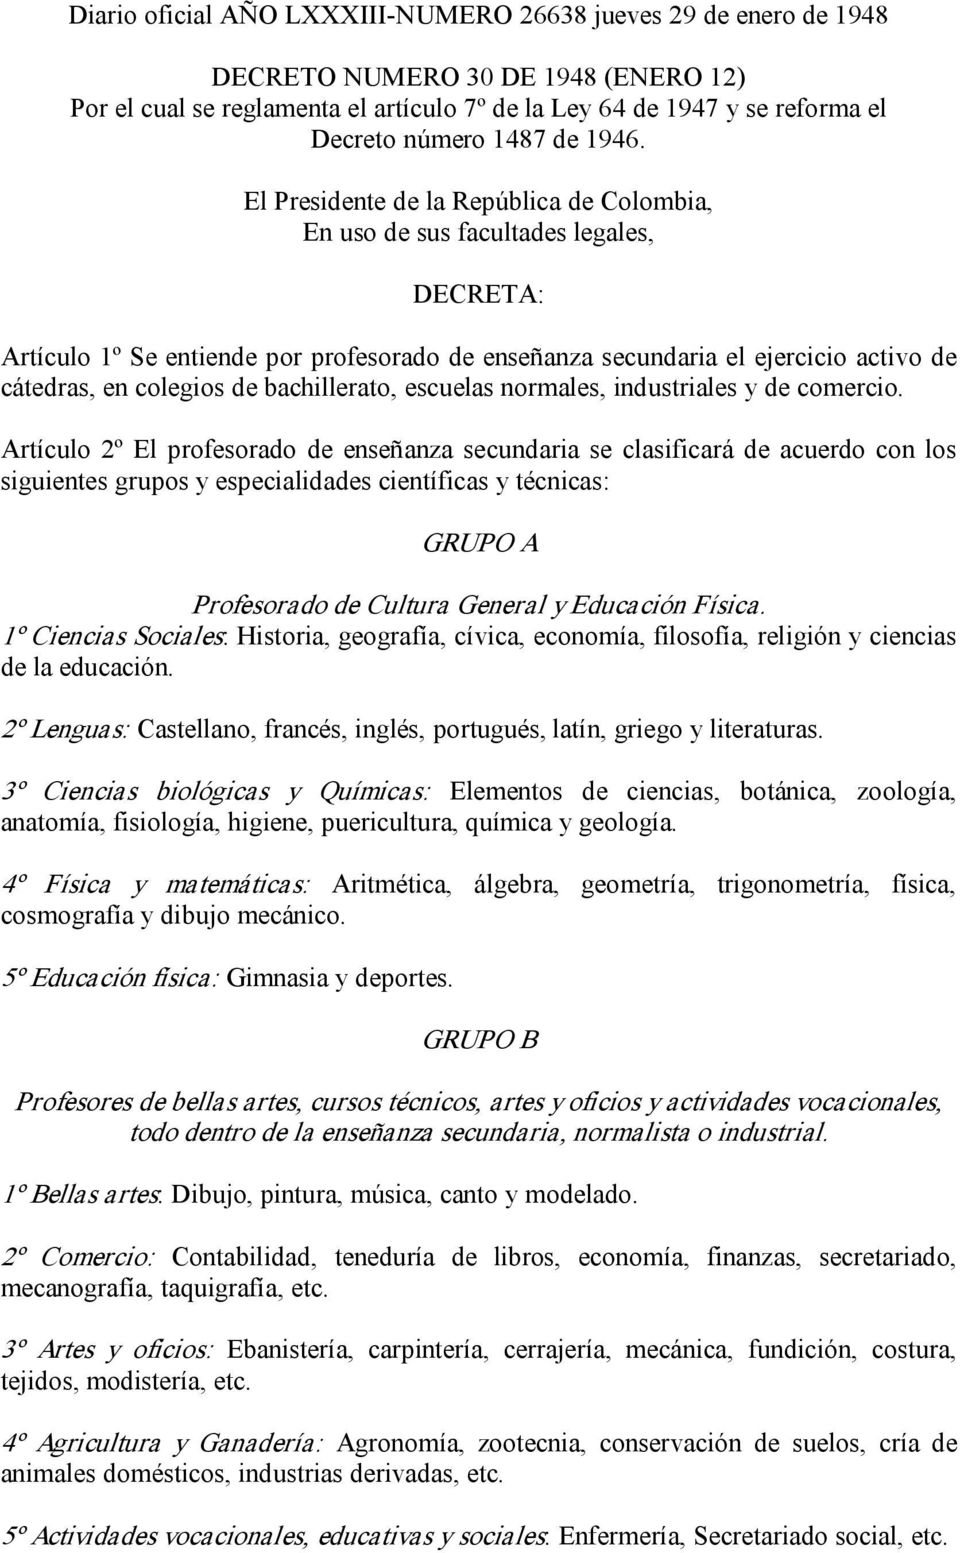 El Presidente de la República de Colombia, En uso de sus facultades legales, DECRETA: Artículo 1º Se entiende por profesorado de enseñanza secundaria el ejercicio activo de cátedras, en colegios de